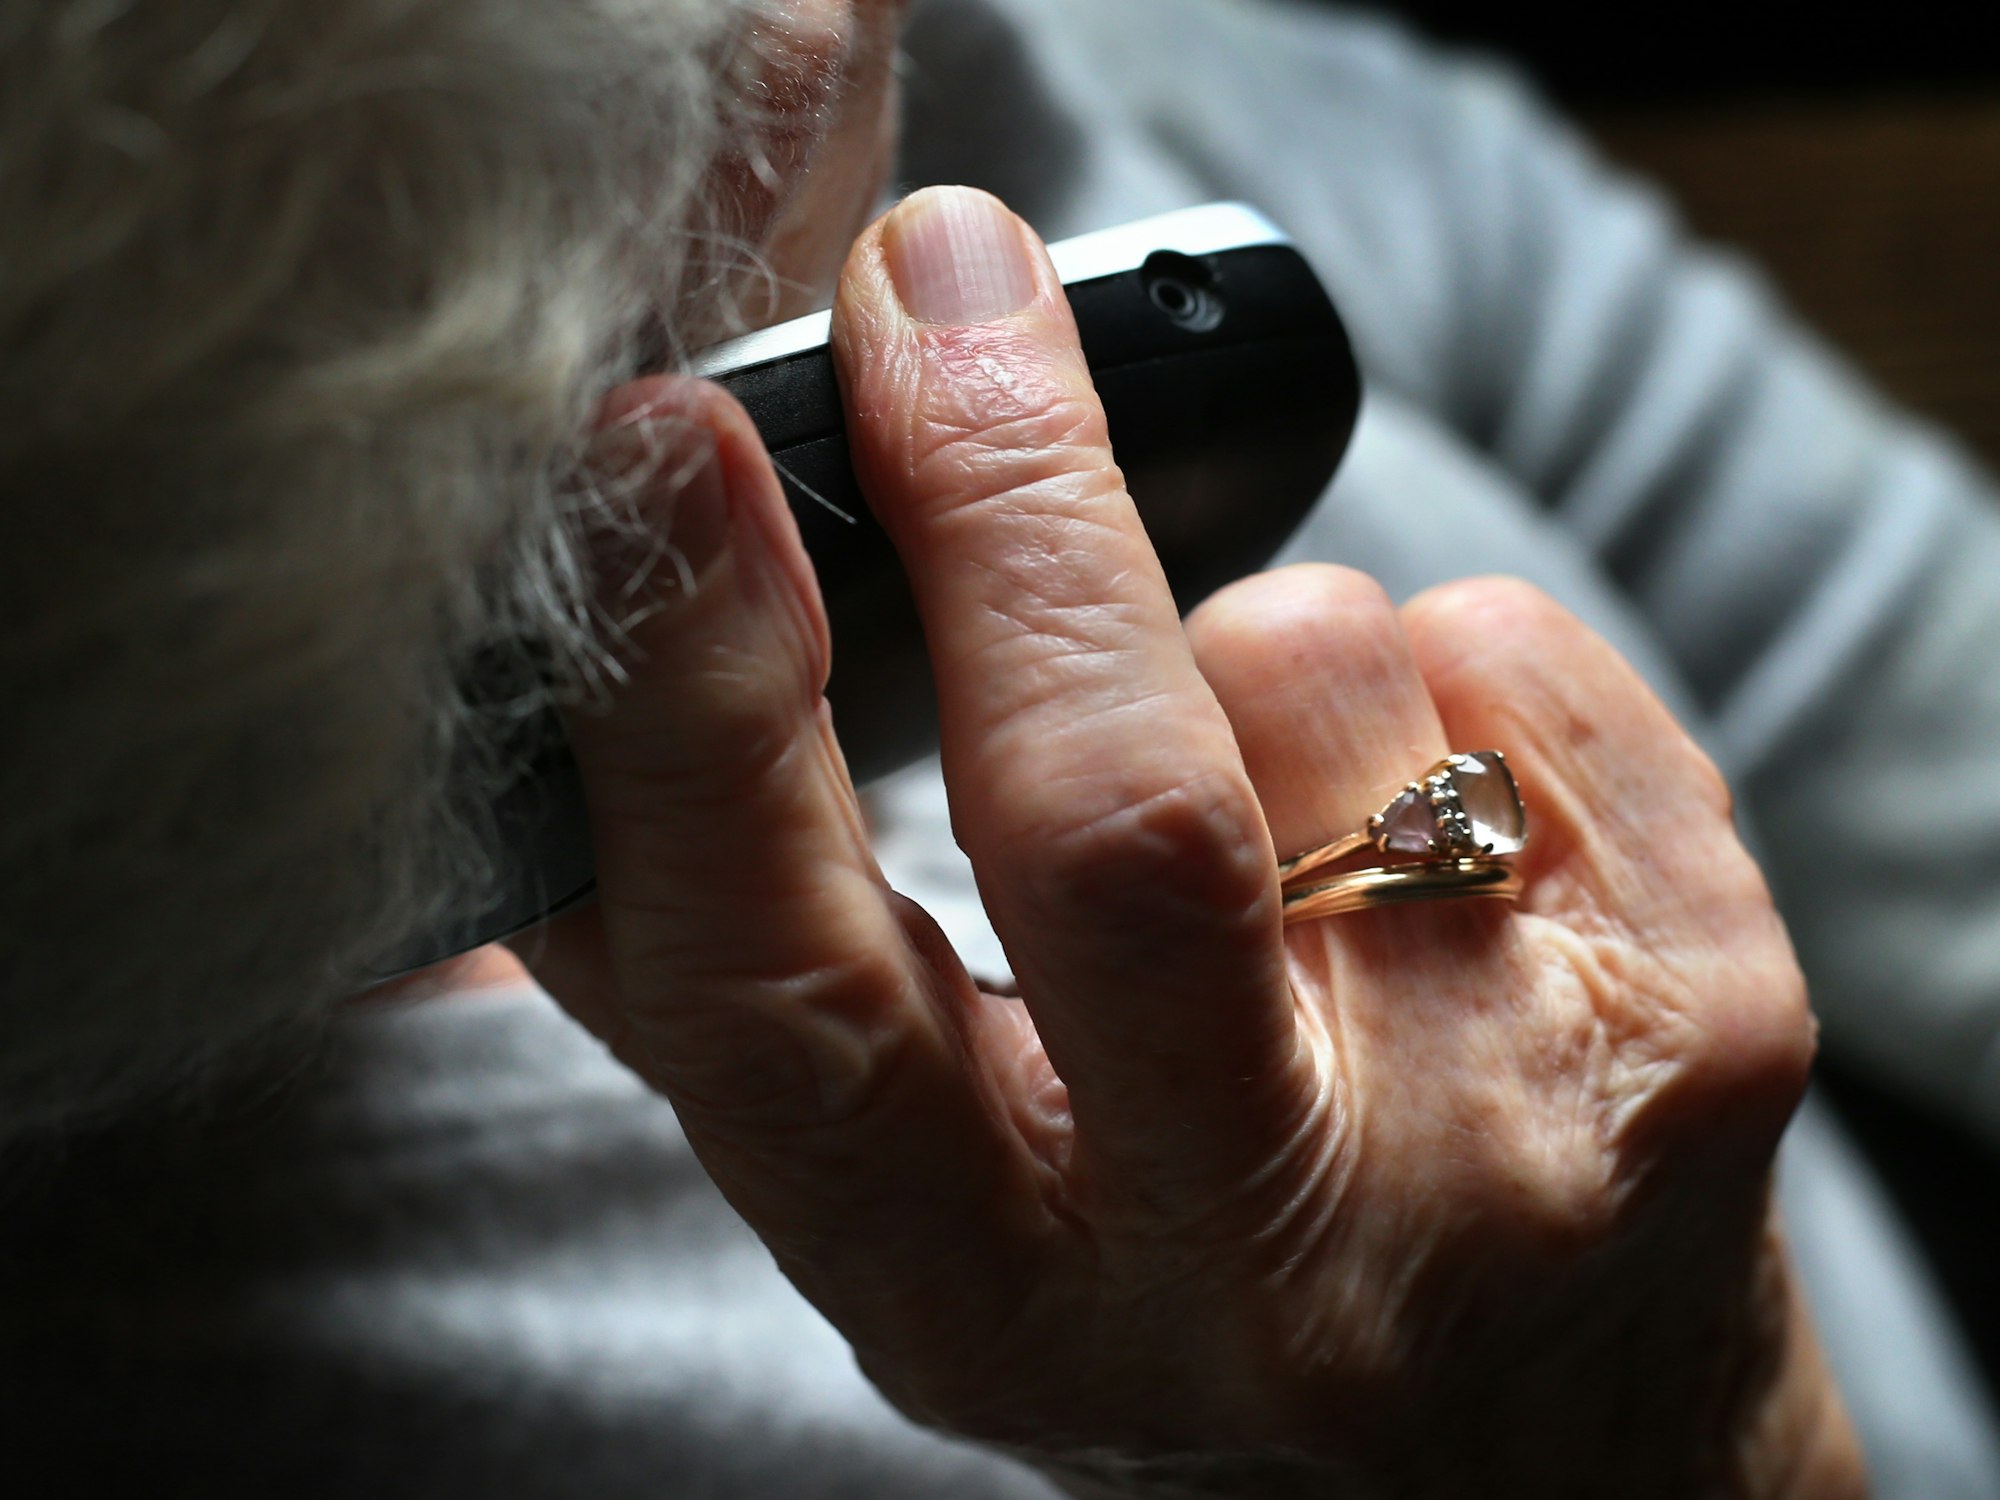 Eine ältere Frau, die einen wertvollen Ring am Finger trägt, telefoniert mit einem schnurlosen Festnetztelefon.